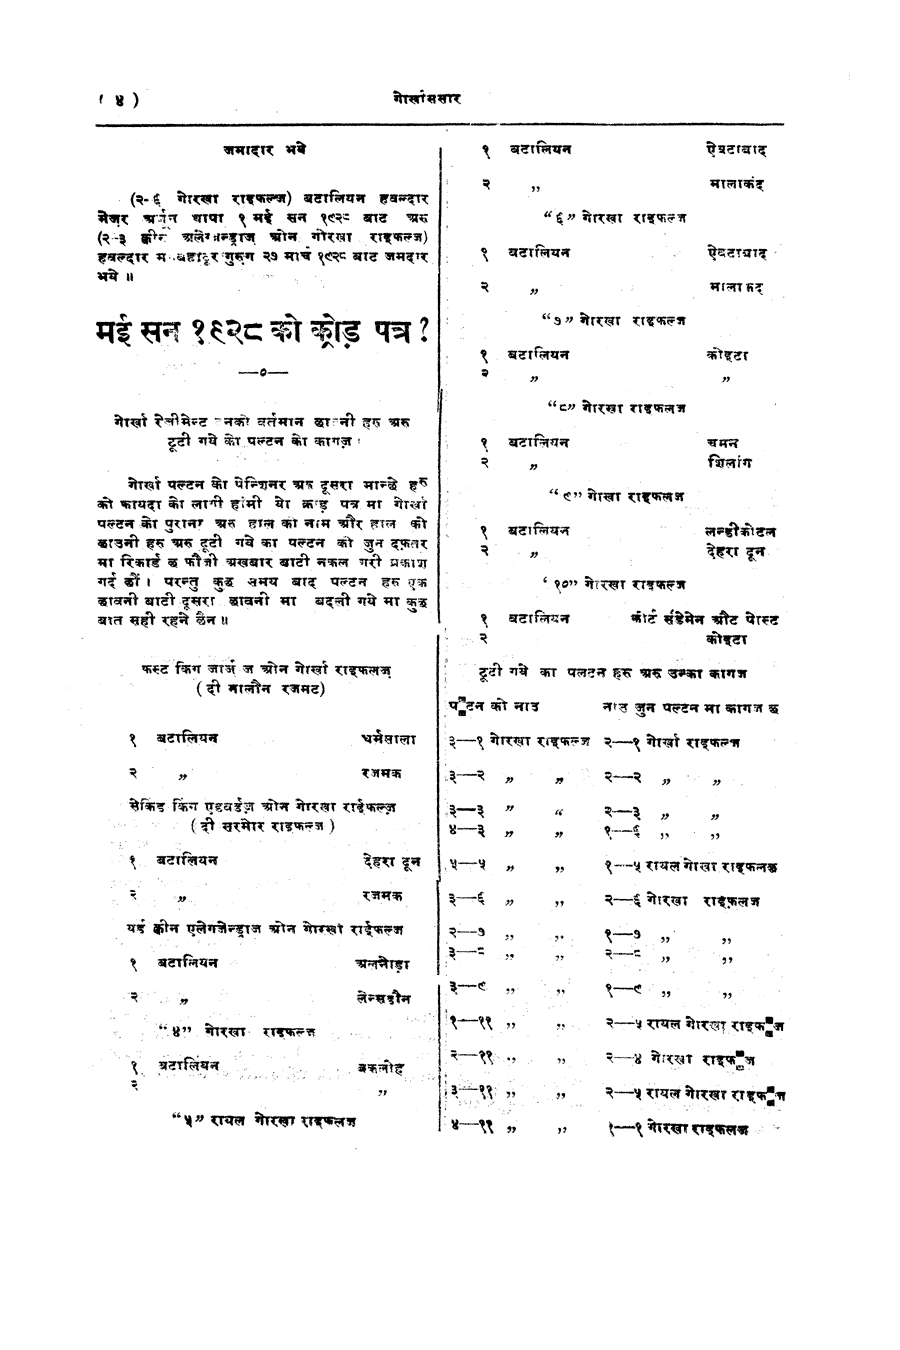 Gorkha Sansar, 11 May 1928, page 4